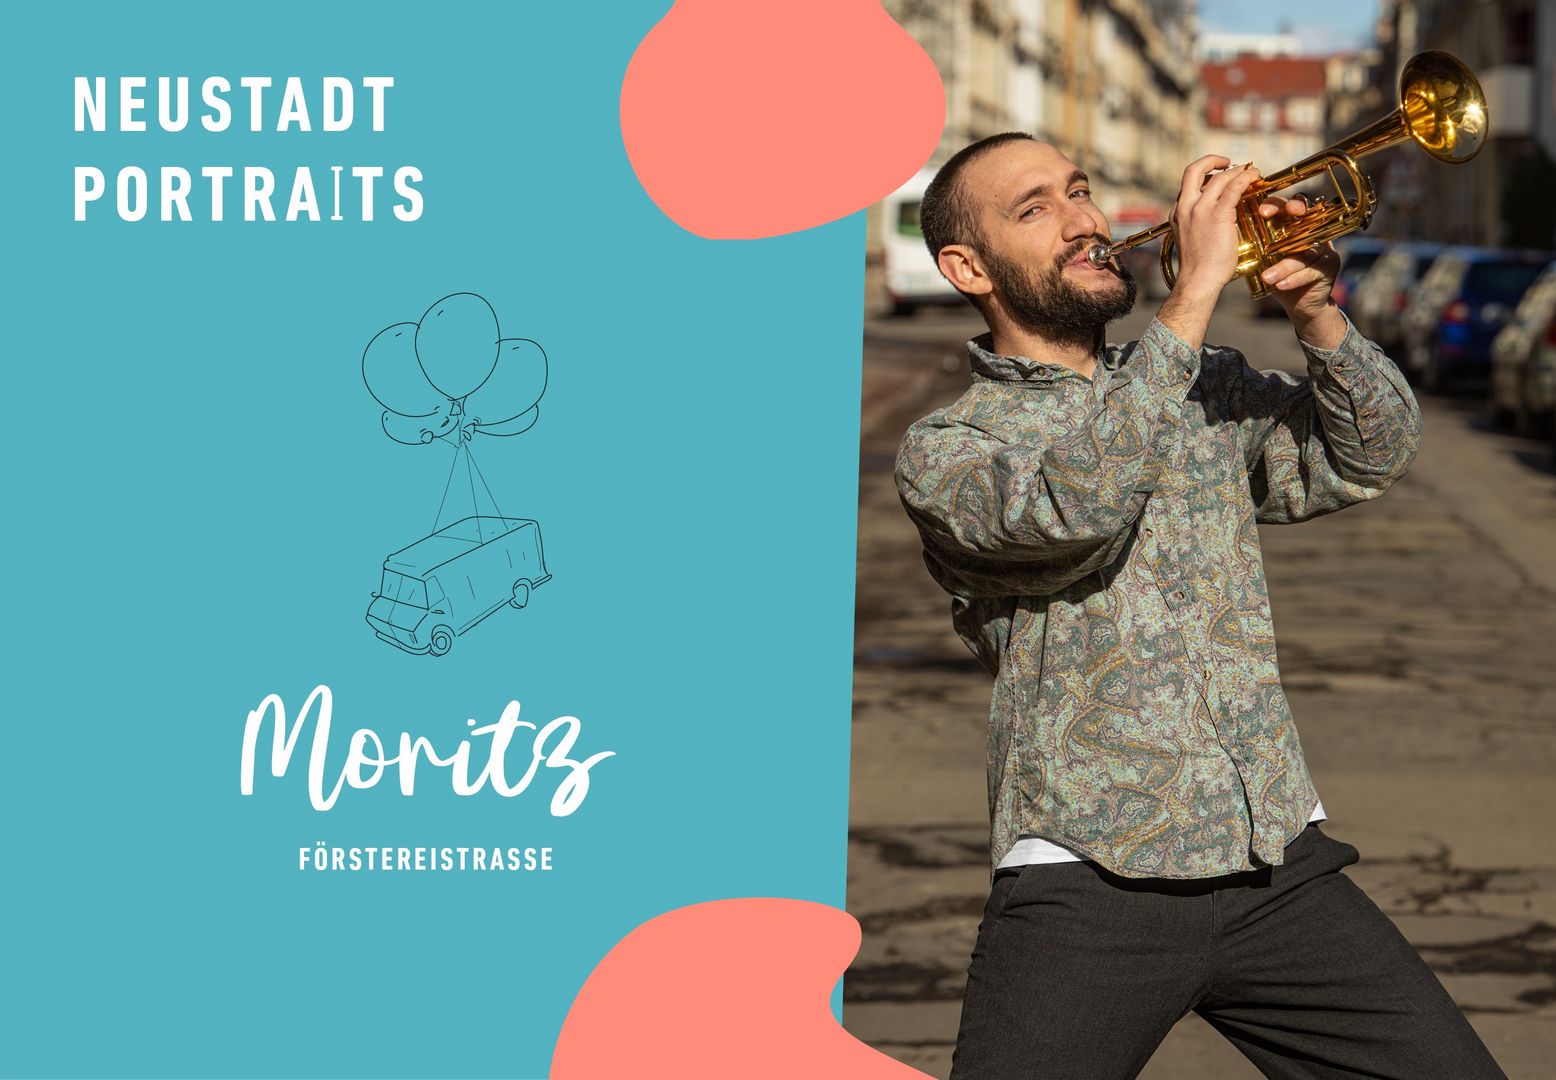 Links blauer Hintergrund mit roten Flecken, Bildaufschrift: Neustadtportraits. Moritz. Förstereistraße. Rechts steht Moritz auf einer Straße und spielt Trompete. Er hat kurze, dunkelbraune Haare, trägt einen Bart und ein gemustertes, langärmliges Hemd.